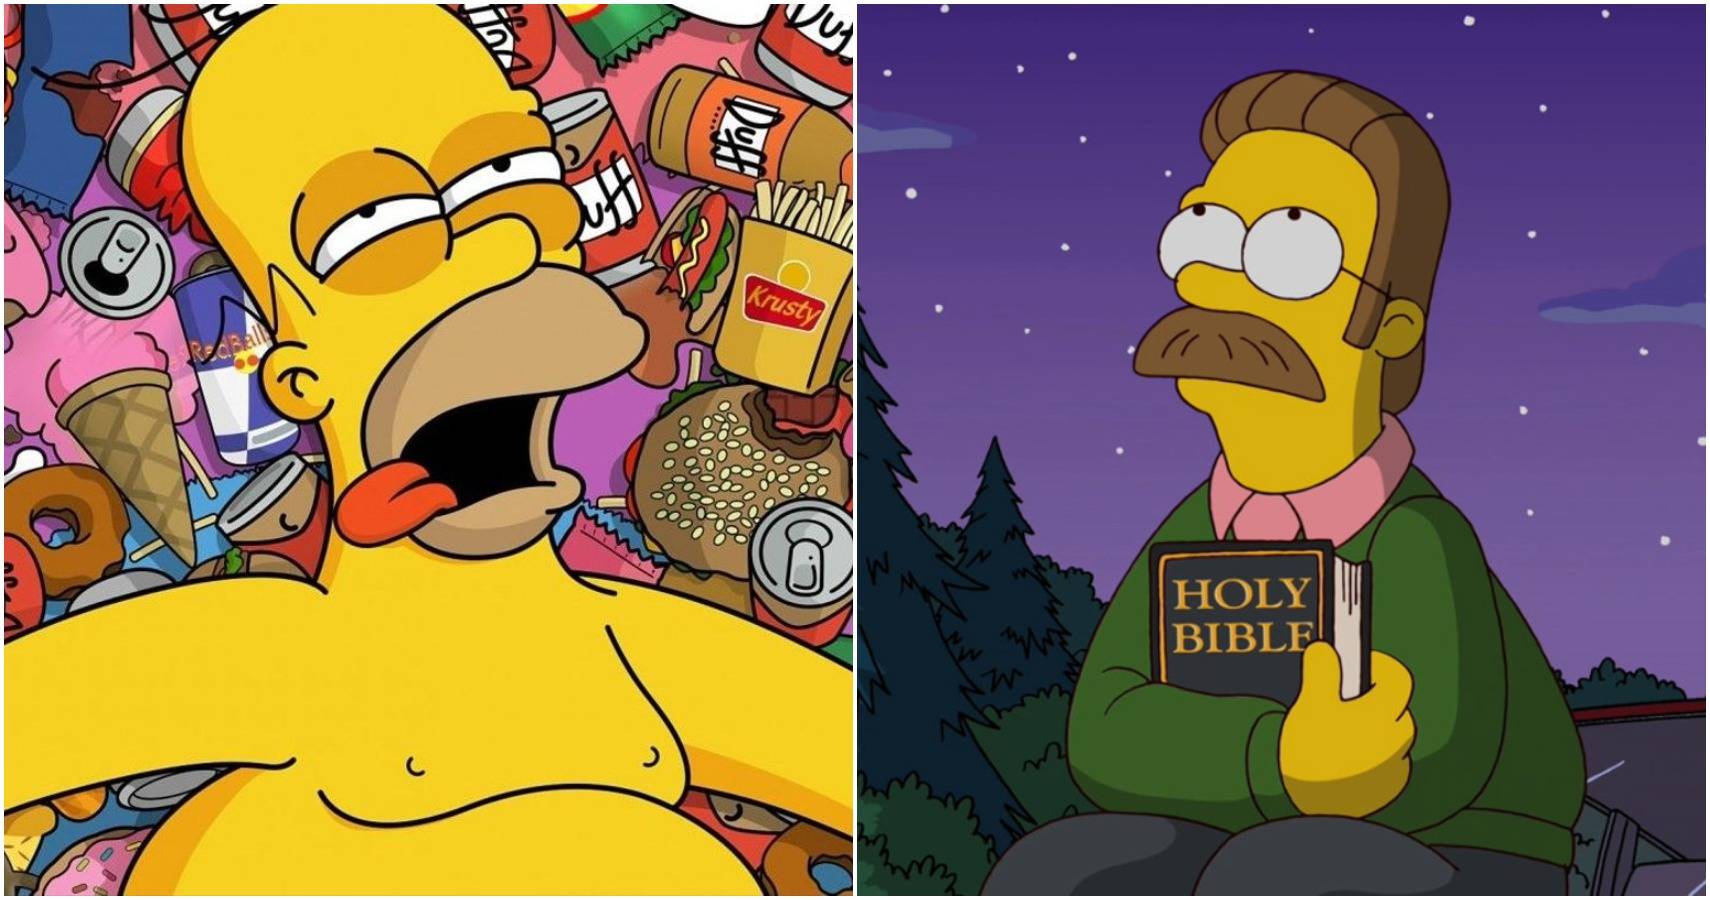 Homers neighbor